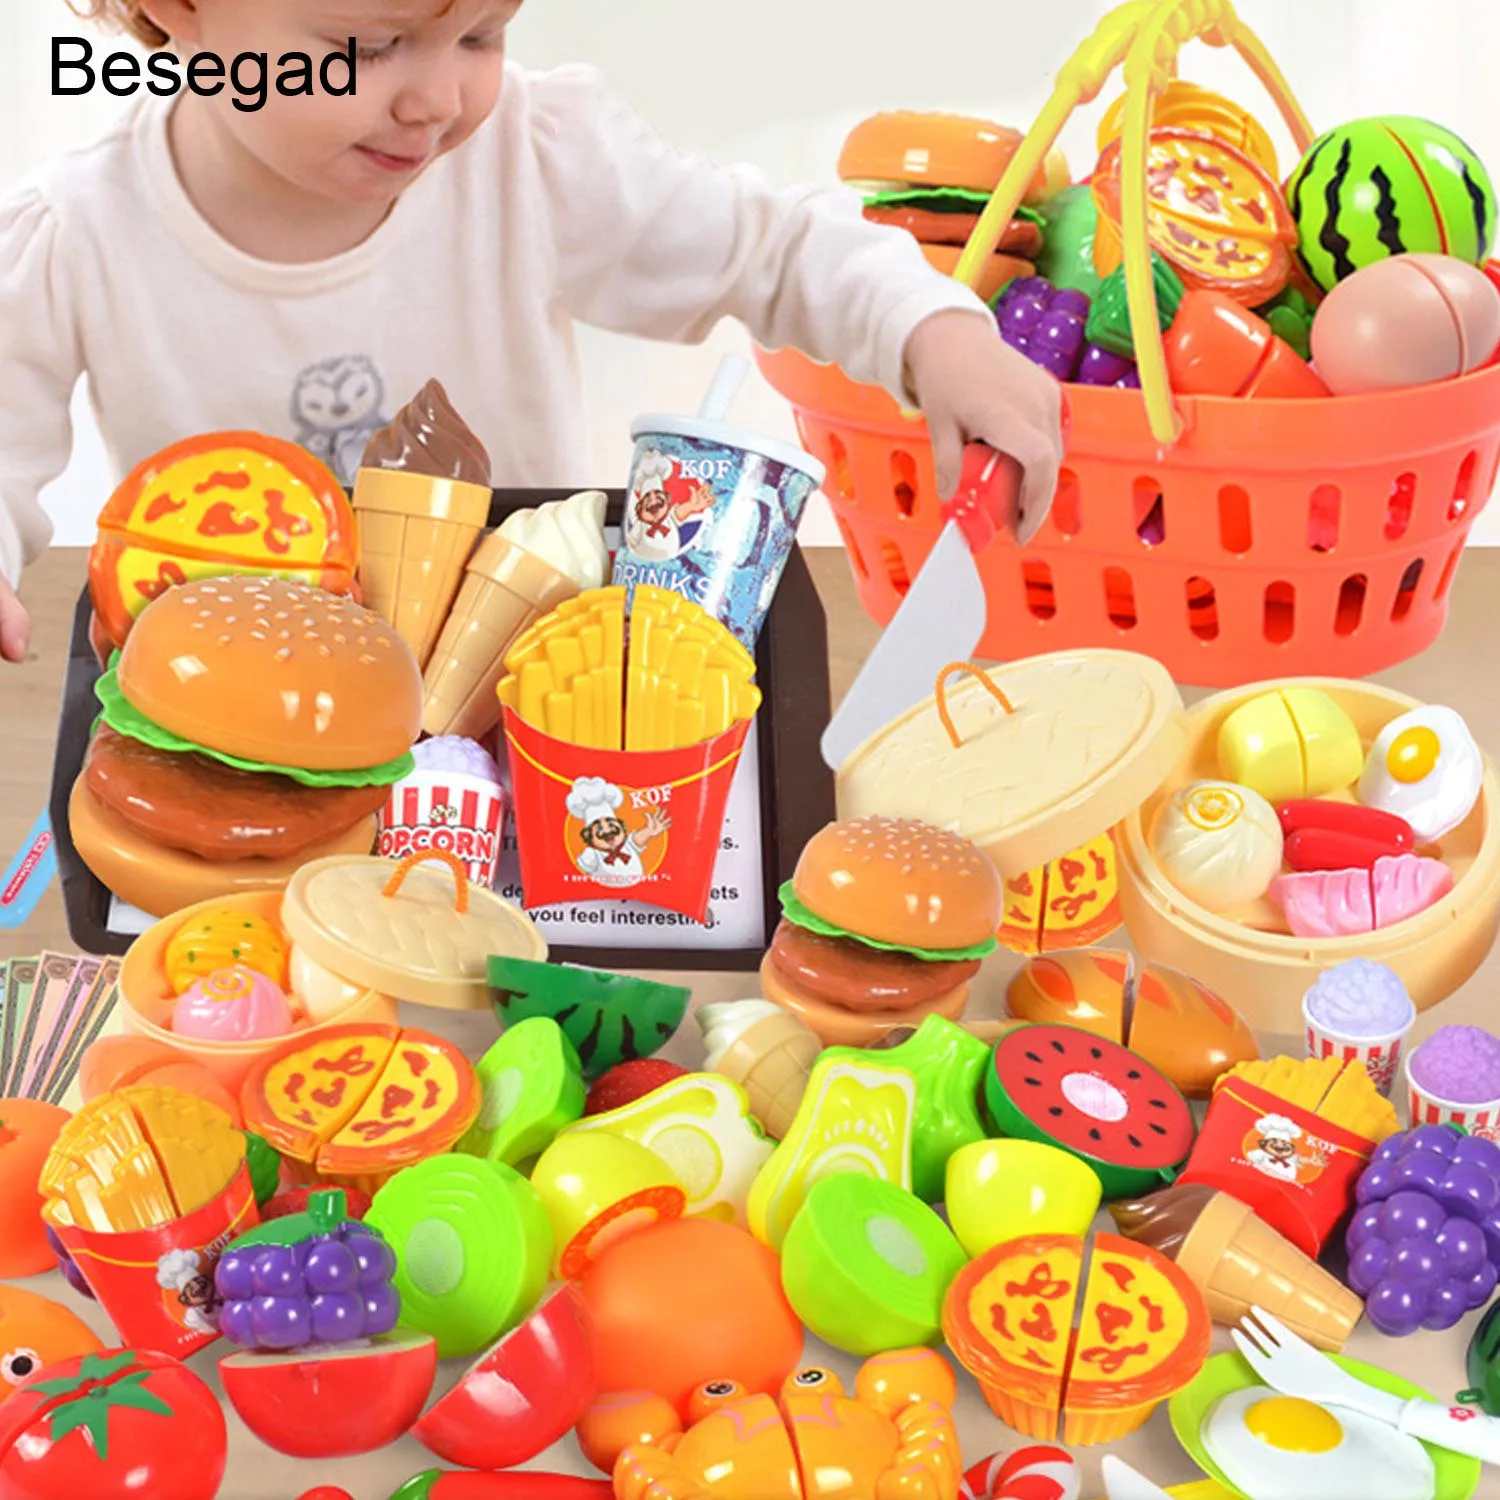 Besegad 36 шт. DIY забавные детские кухонные режущие игрушки набор, включая фрукты овощи ножи дети ролевые игровые наборы ролевые игрушки